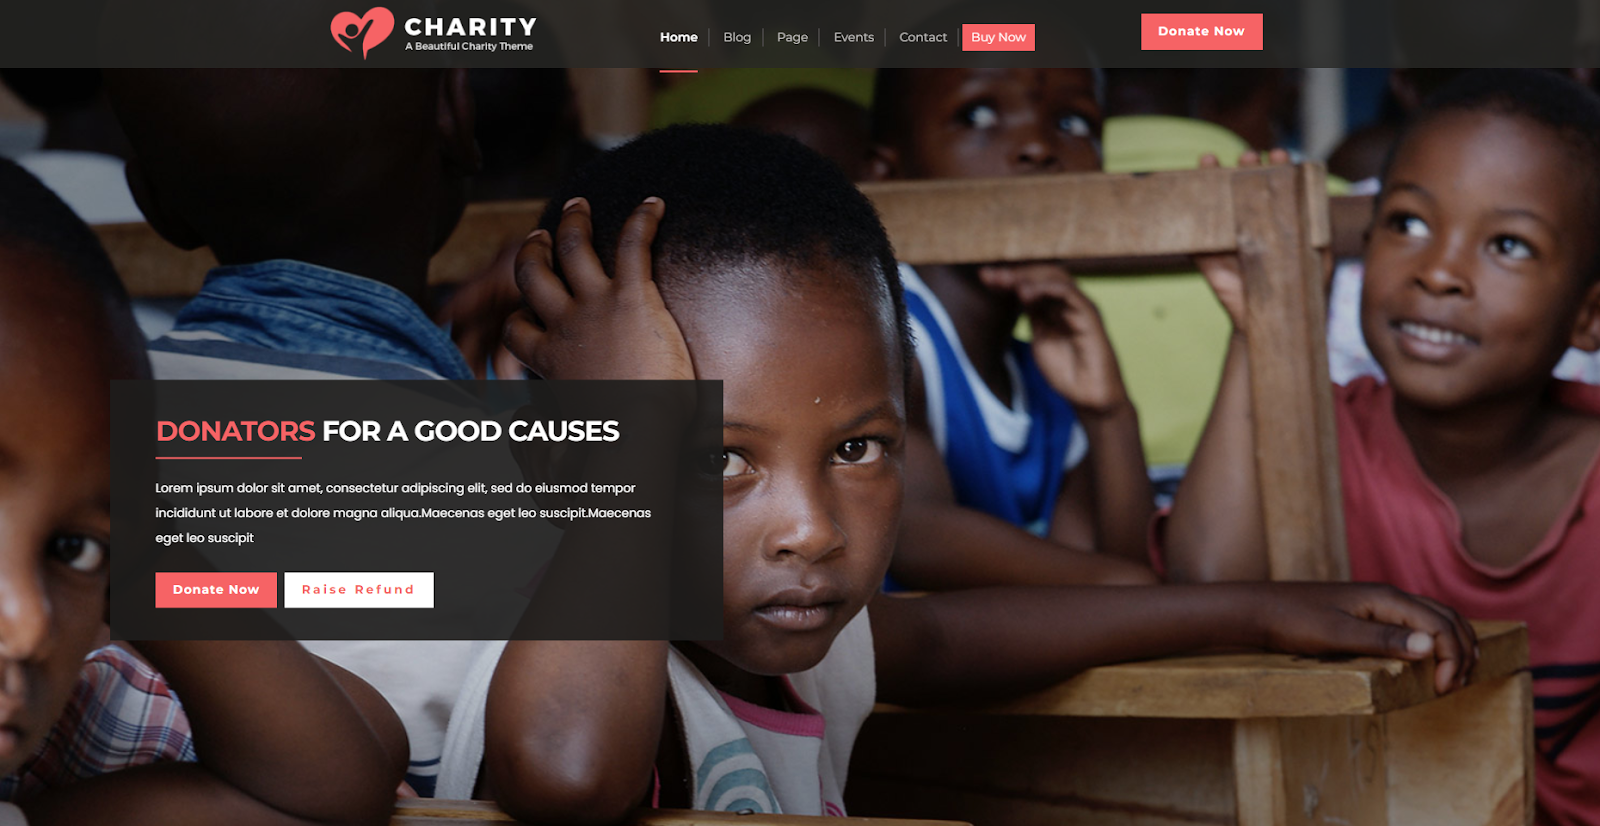 VW Charity NGO